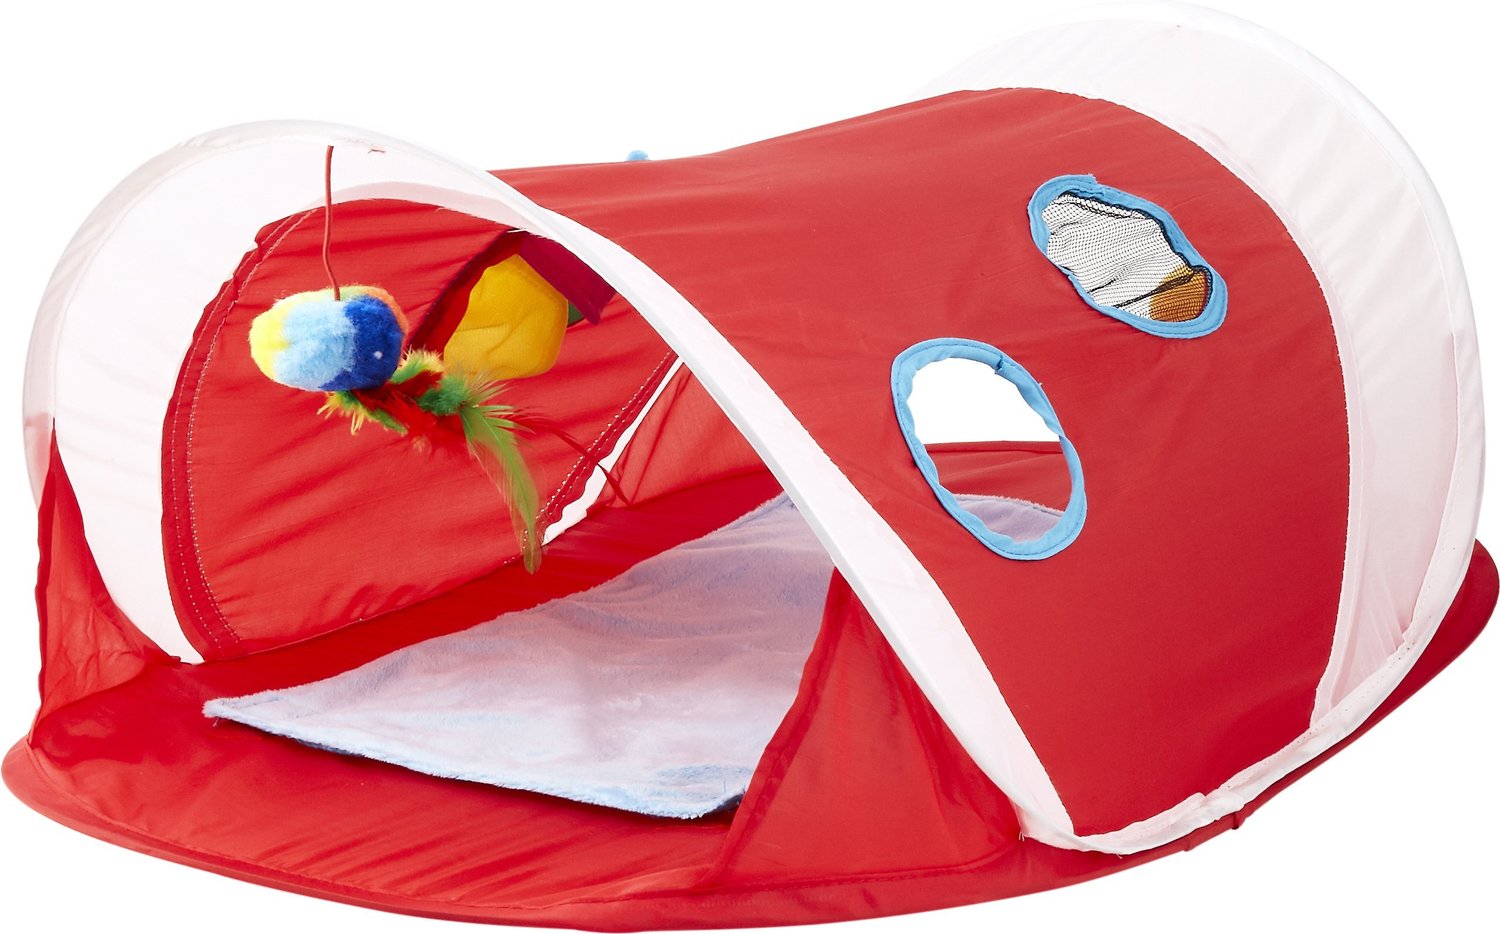 kant moeilijk vingerafdruk HARTZ Just for Cats Peek & Play Pop-Up Tent Cat Toy - Chewy.com